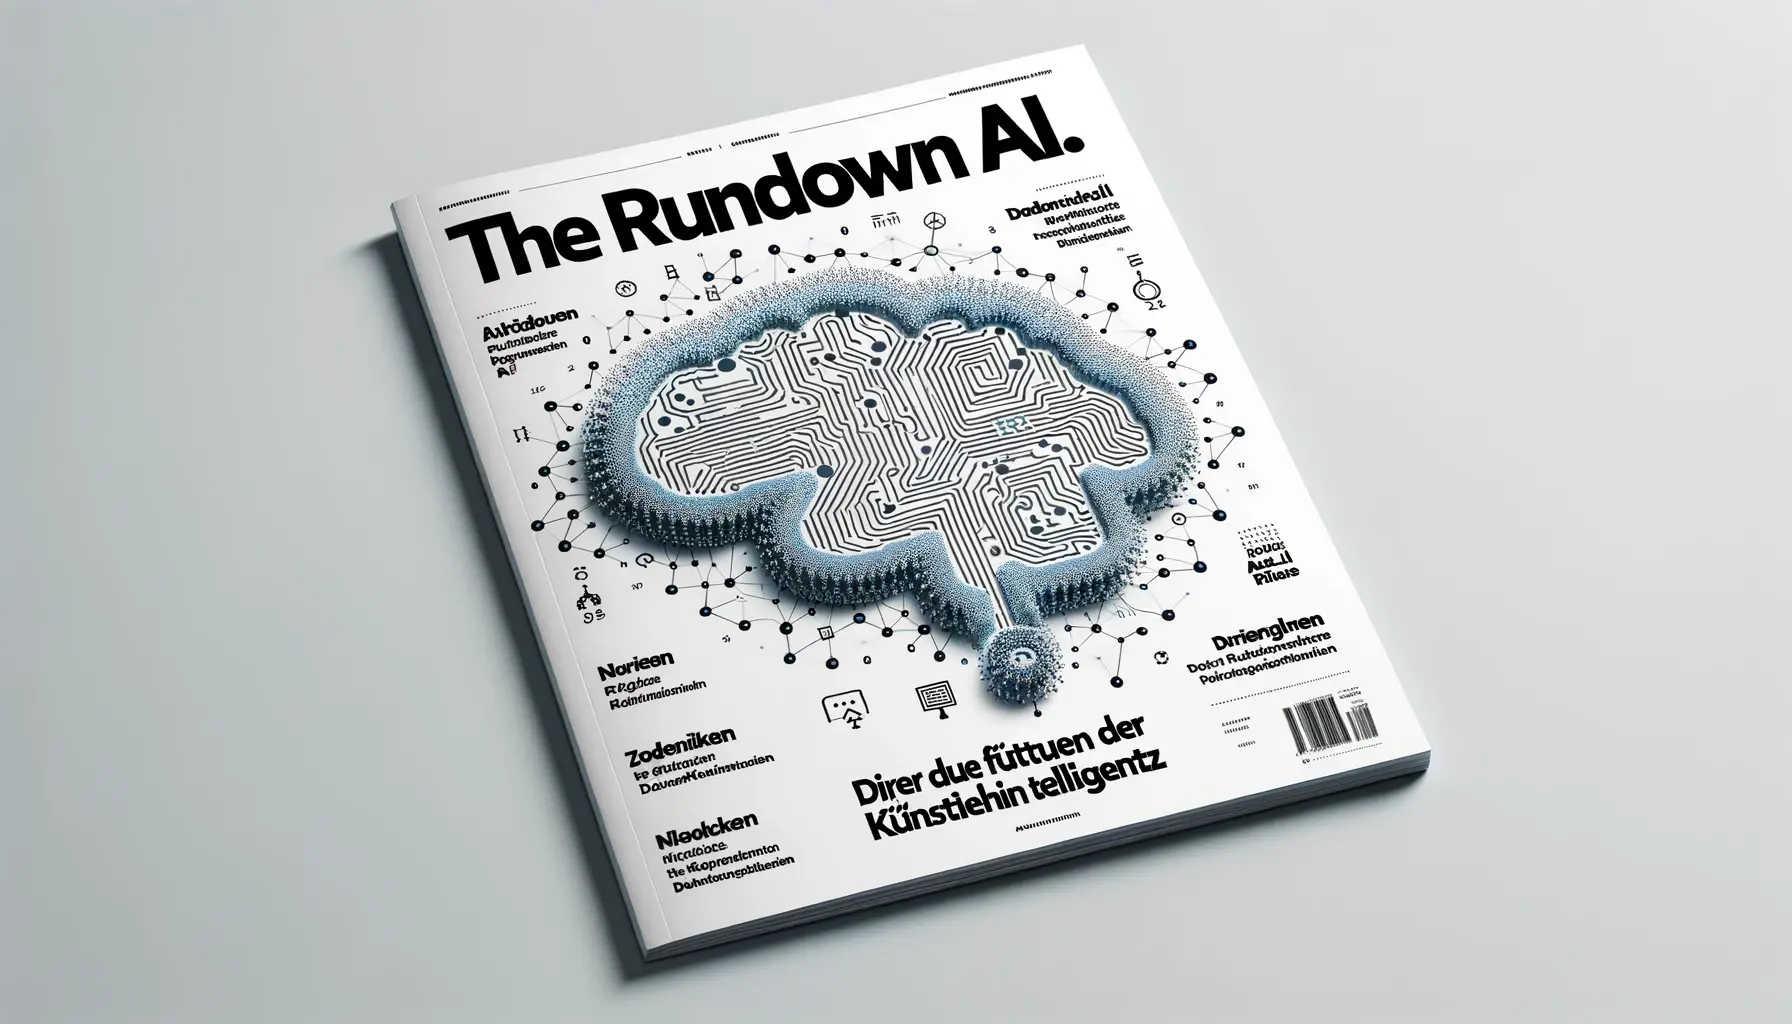 Review. The Rundown AI